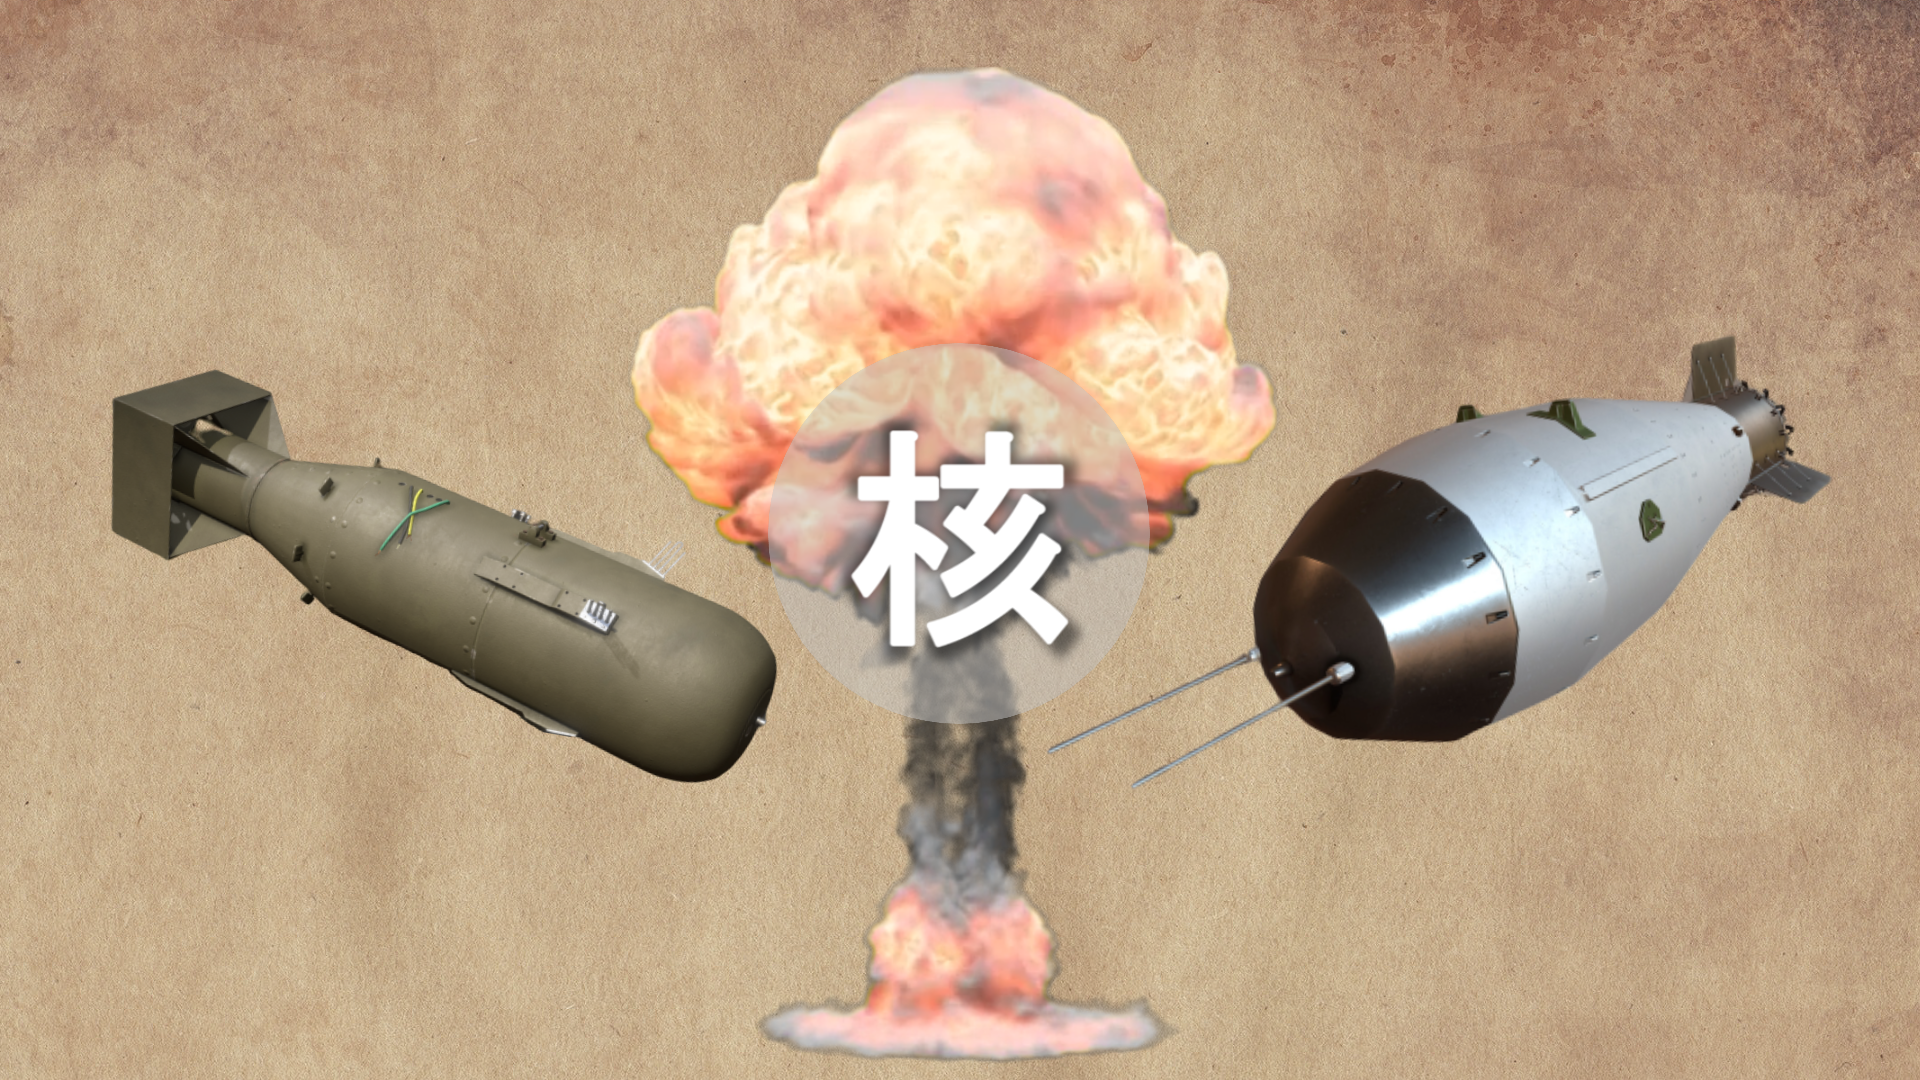 中国第一颗三百万吨氢弹试爆珍贵画面 - 知乎